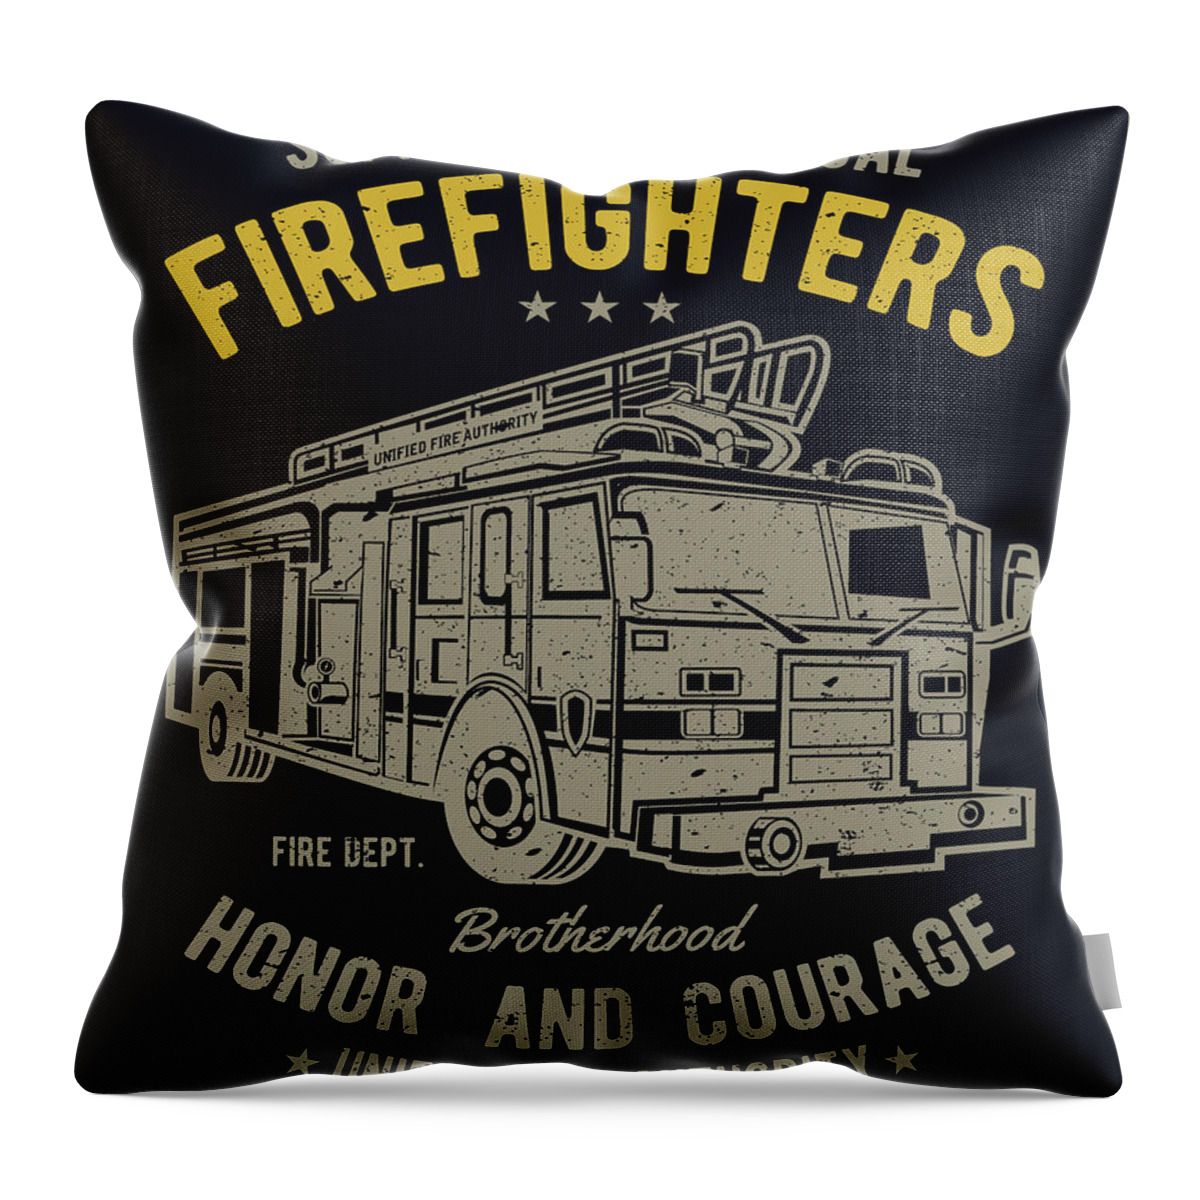 Firefighter Throw Pillow featuring the digital art Firefighter truck by Long Shot